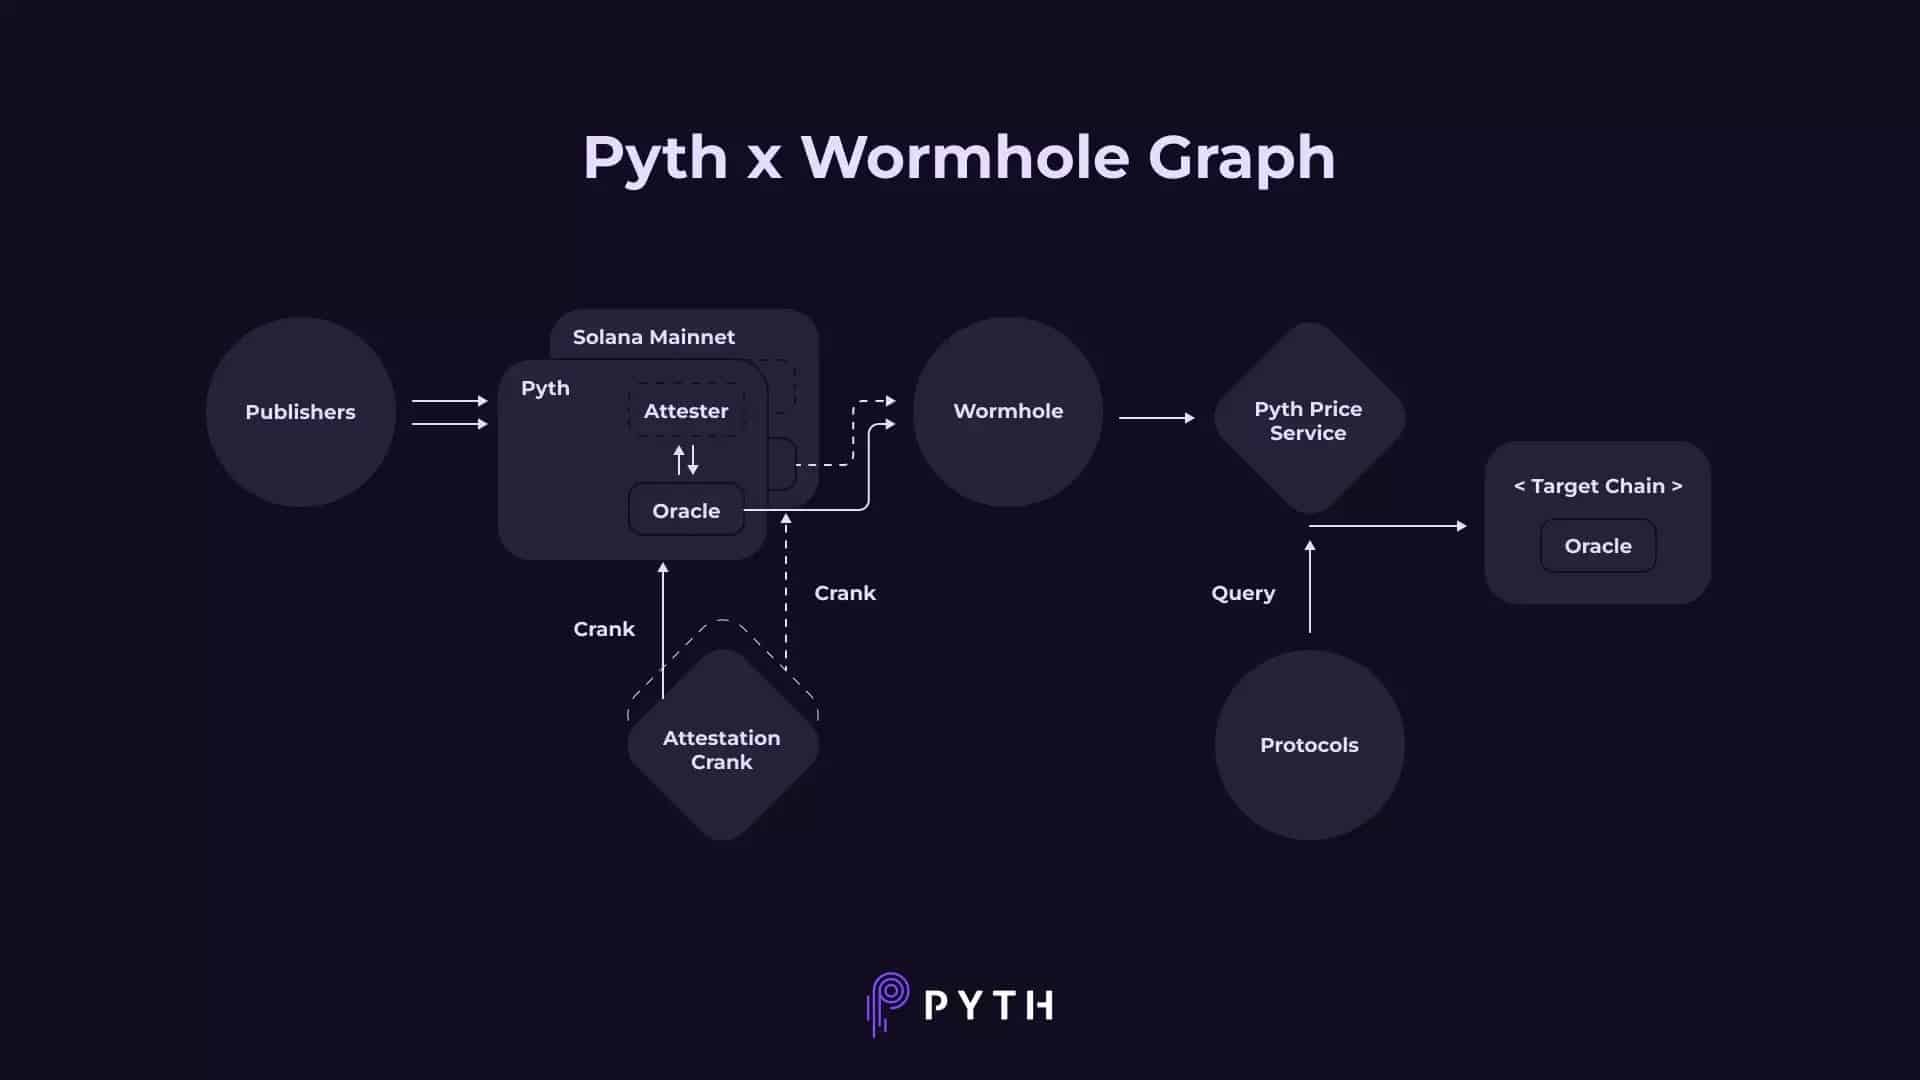 通过Pyth Network和虫洞协议传输数据的示意图